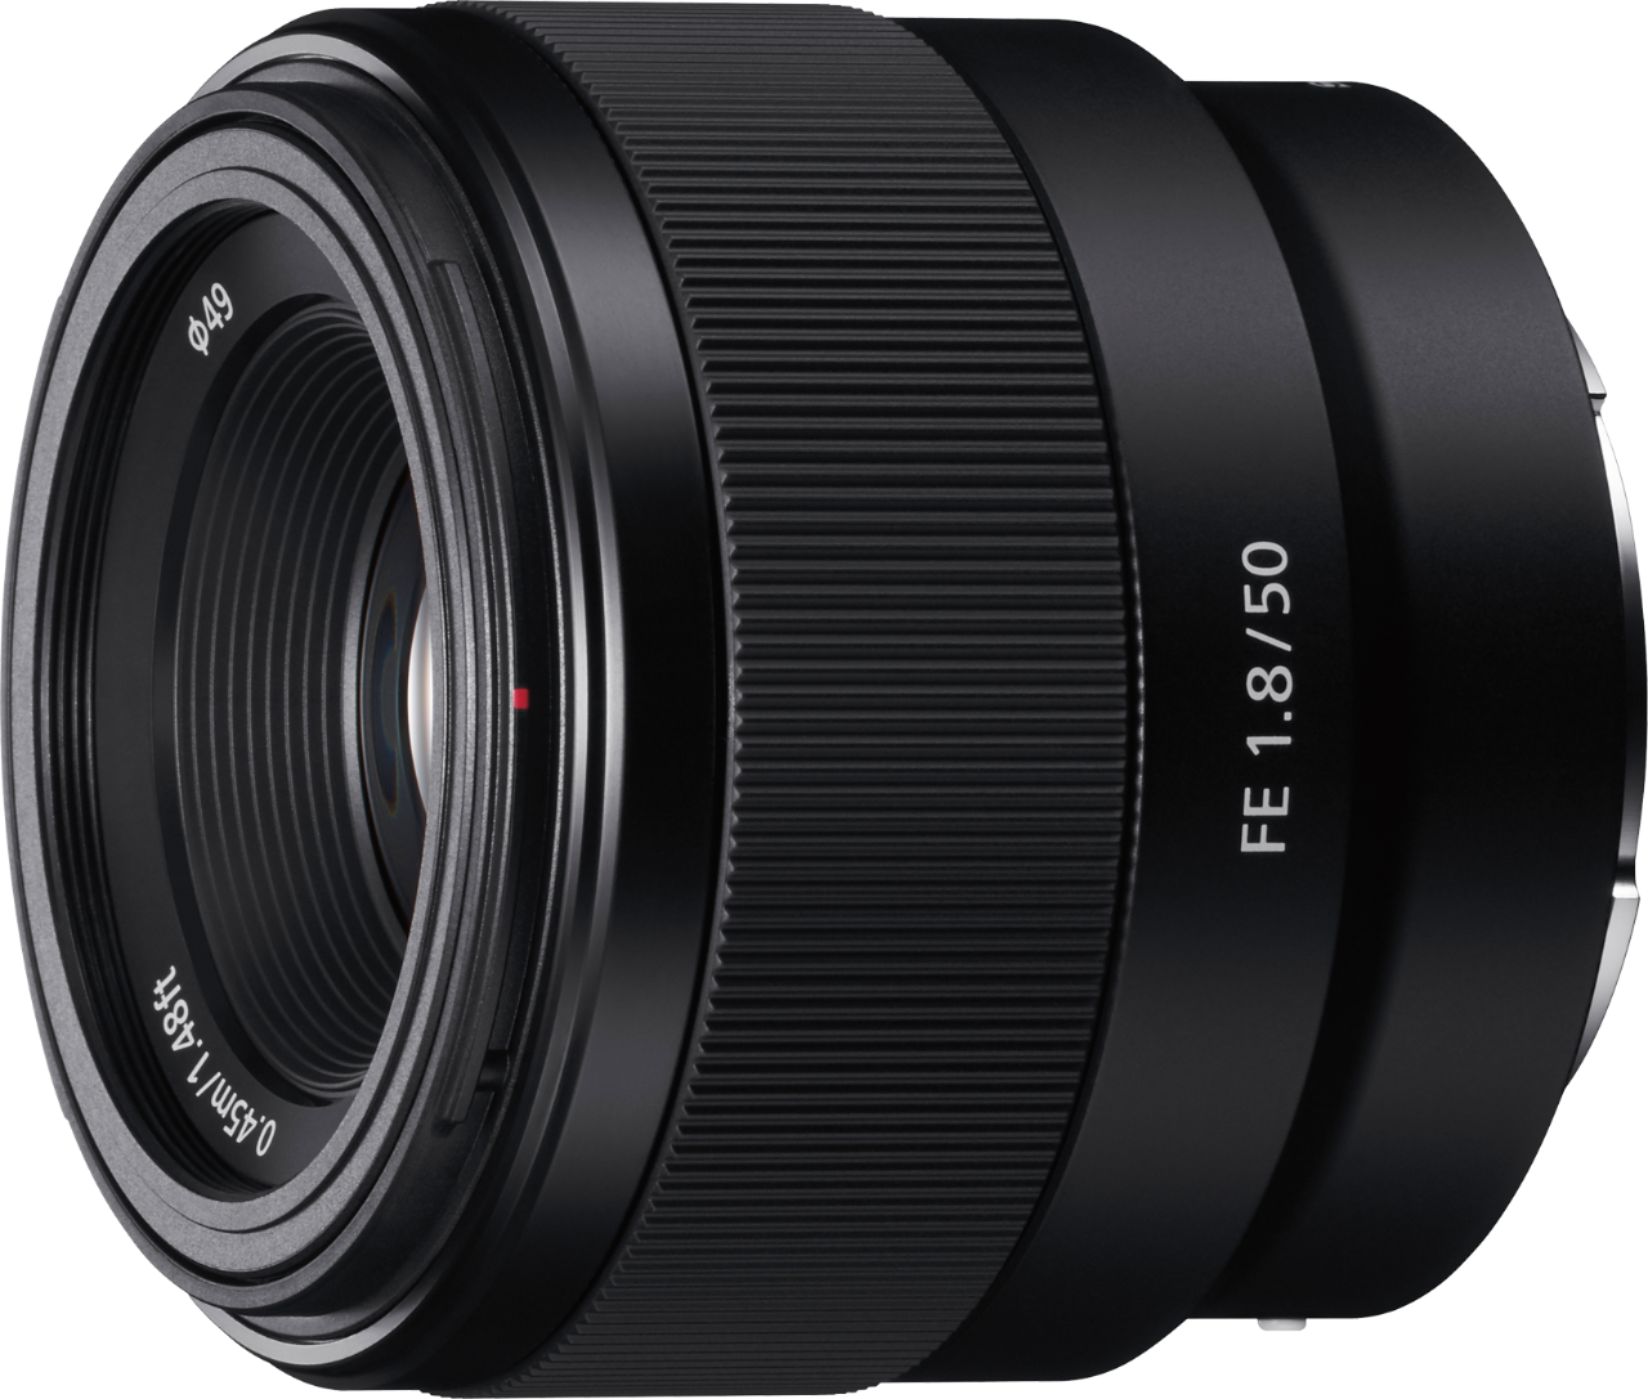 Sony FE 50mm f/1.8 Standard Prime Lens for E-mount Cameras 